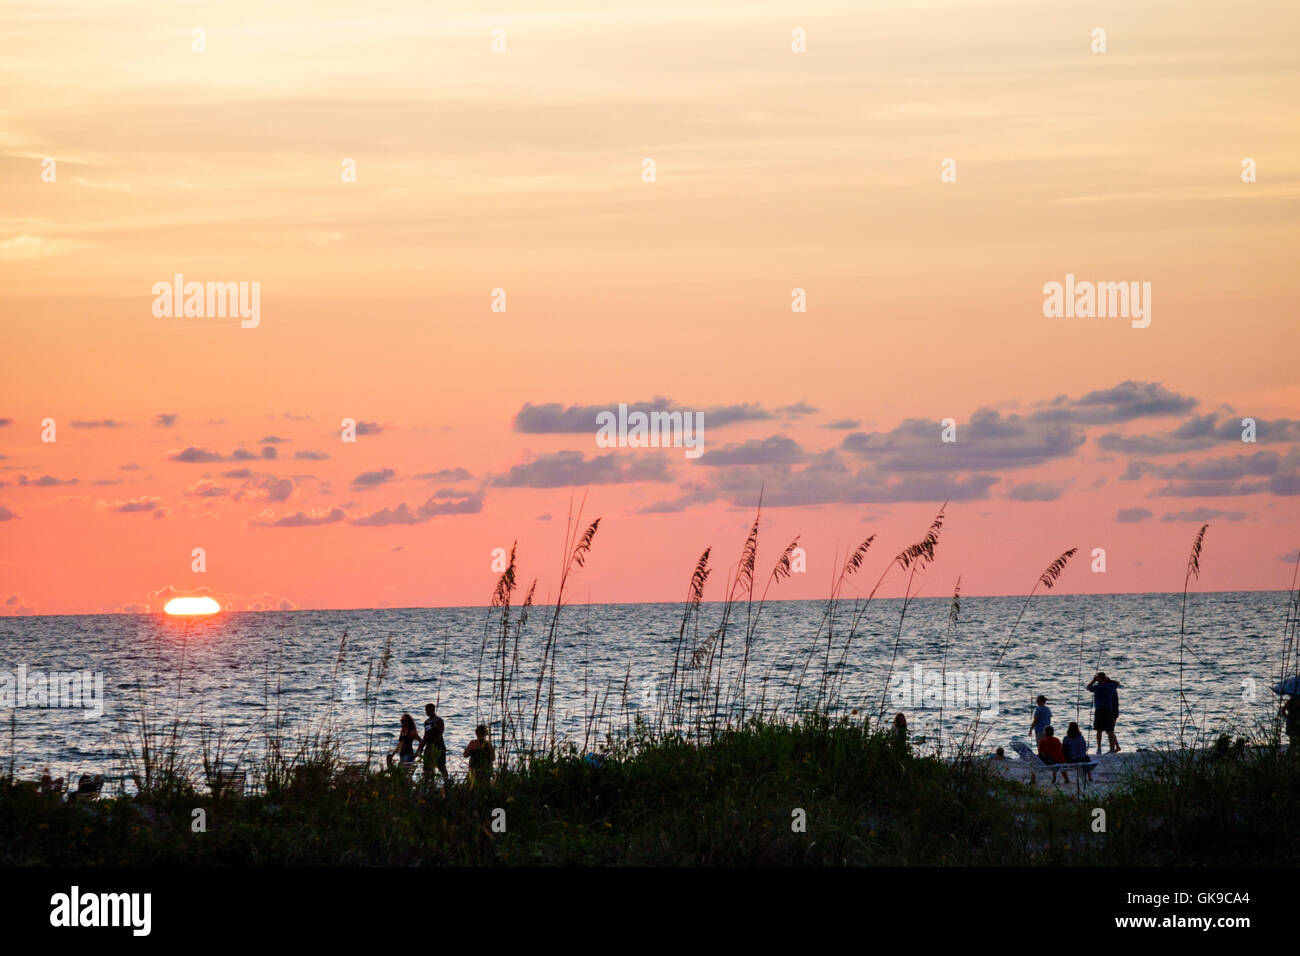 Florida Golfo de México, Costa del Golfo, Anna Maria Island, Bradenton Beach, frente al mar, puesta de sol, avena, puesta de sol, sol, horizonte, nubes, cielo naranja, silueta, FL1 Foto de stock